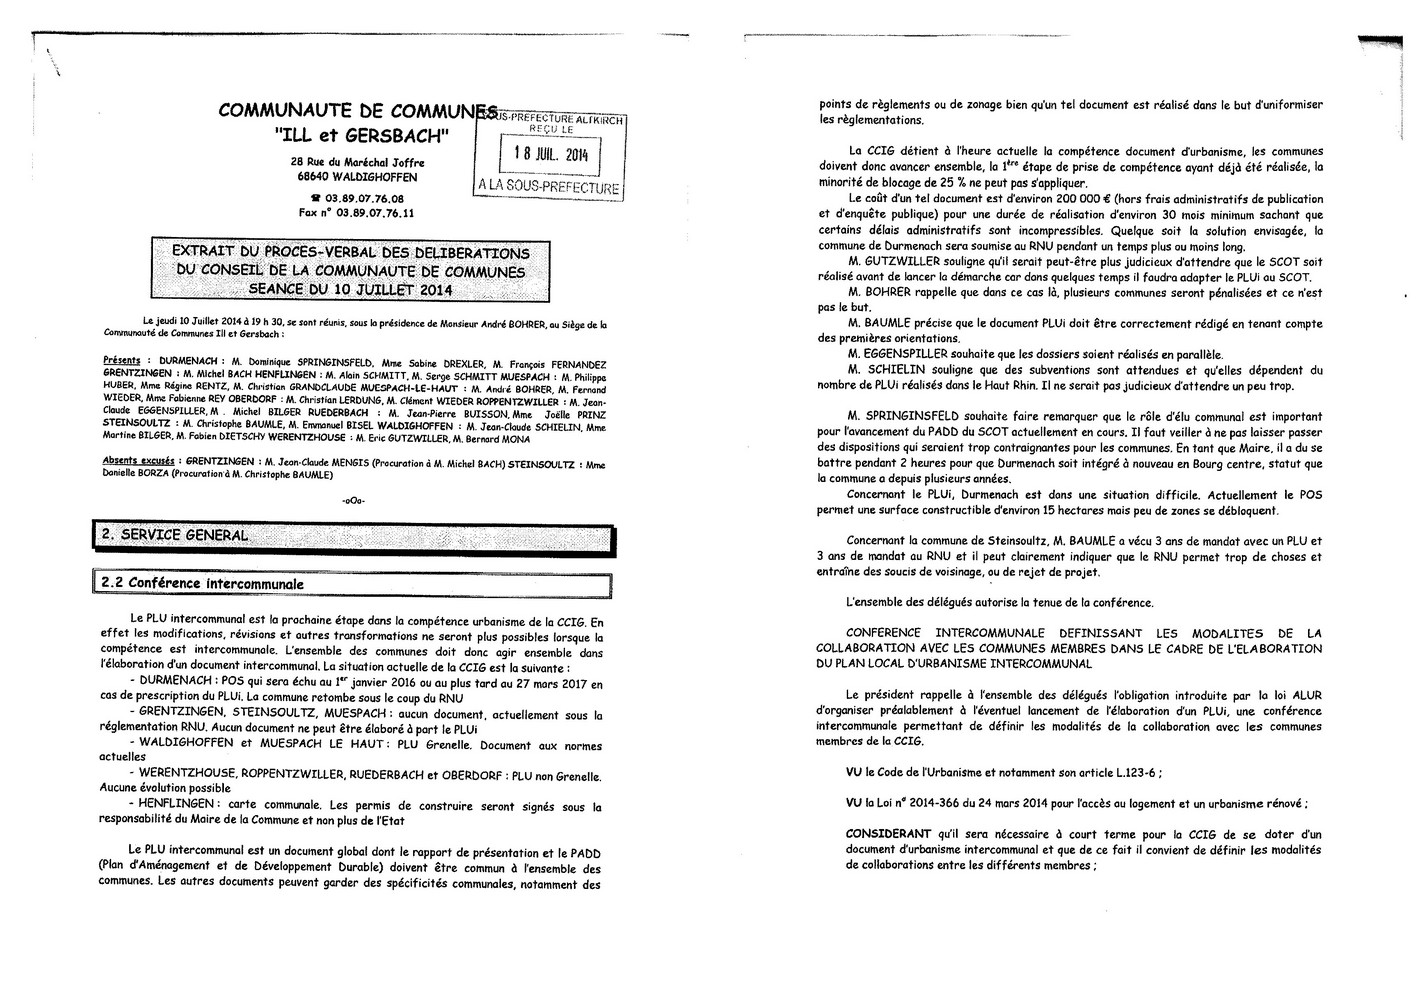 Communauté de Communes Ill et Gersbach : procès verbal de la séance du 10 juillet 2014